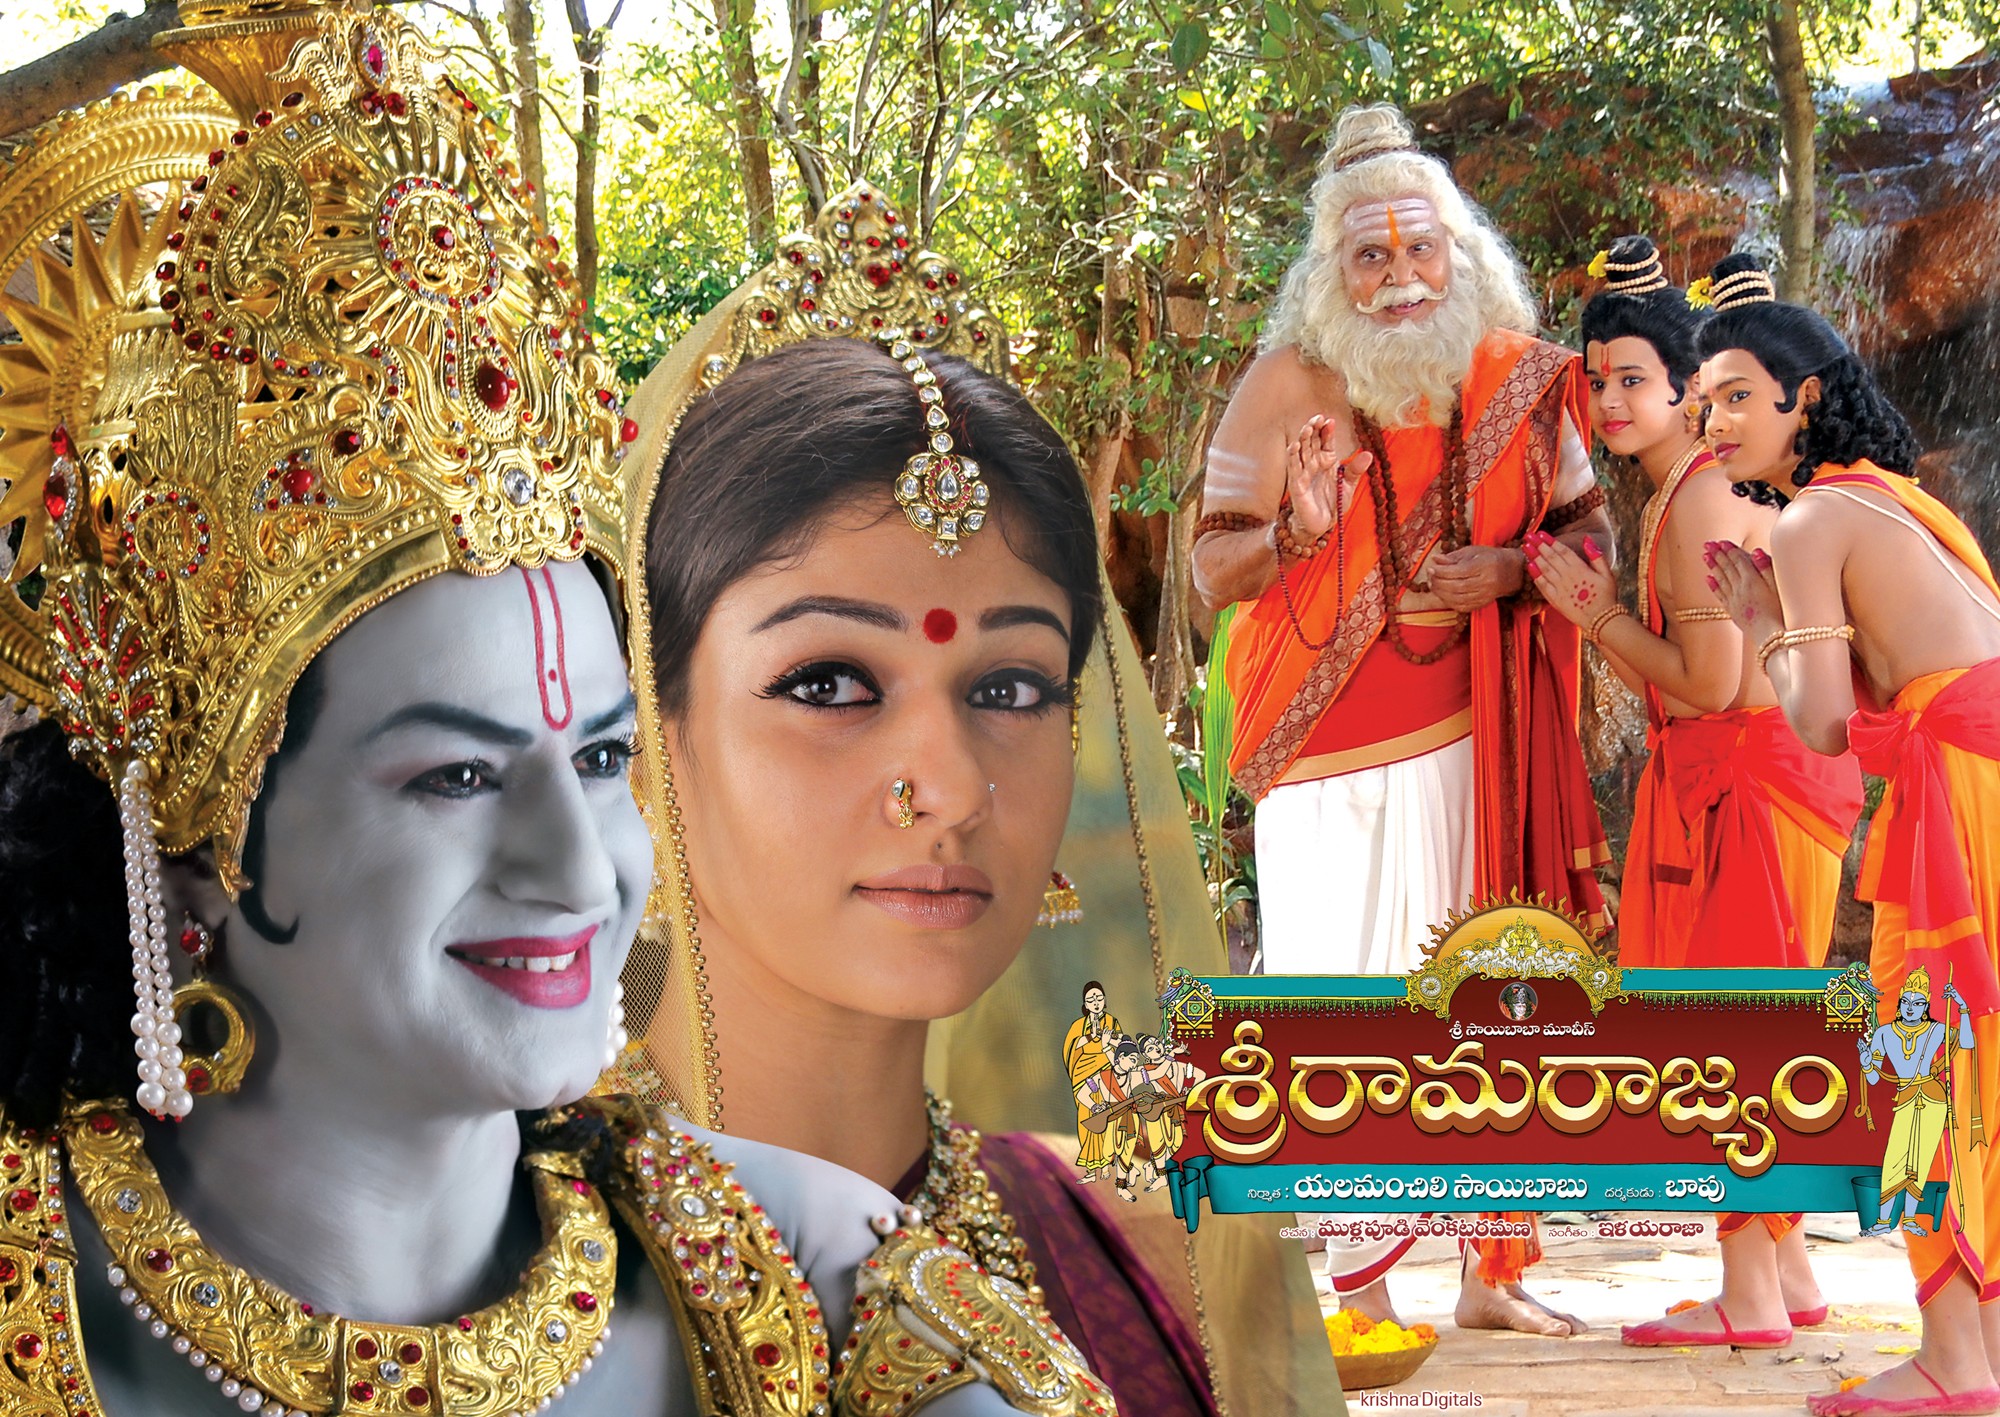 Mega Sized Movie Poster Image for Sri Rama Rajyam (#8 of 10)